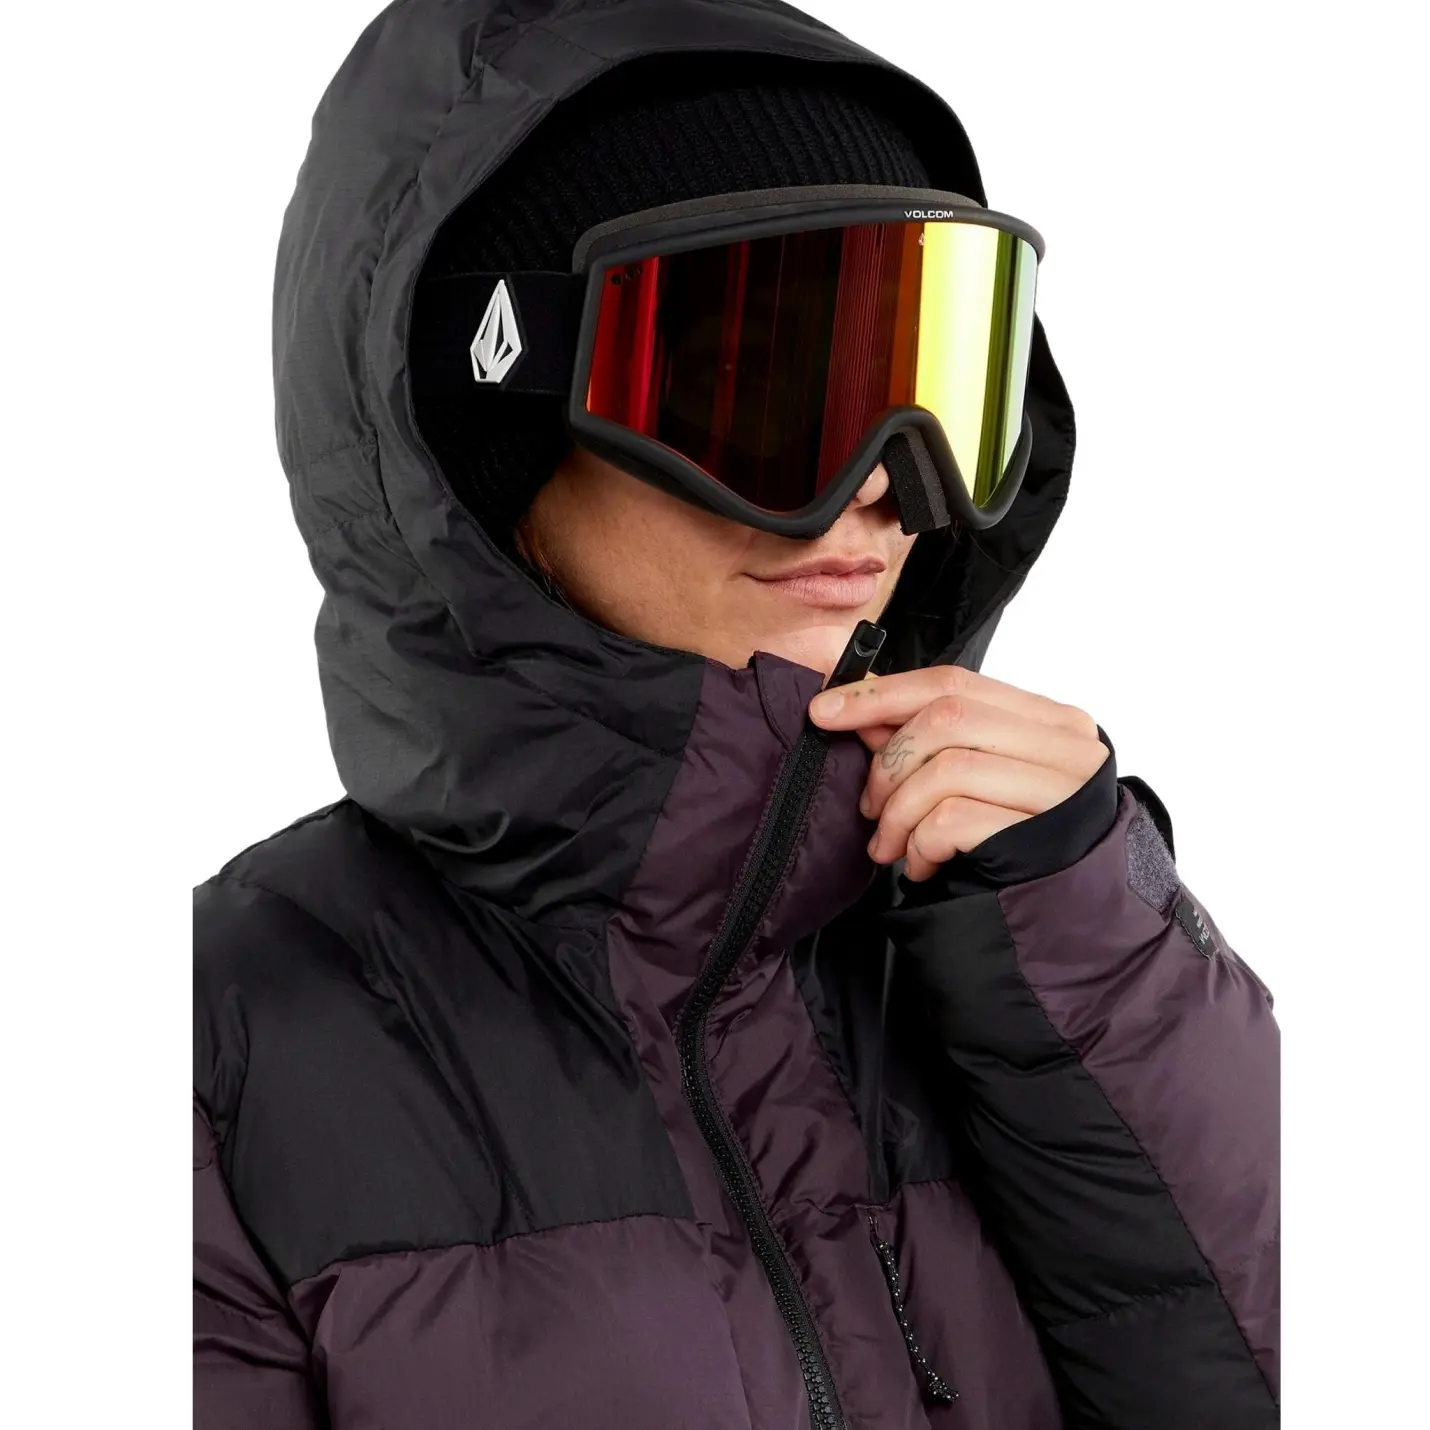 Volcom giacca snowboard donna puffleup blackberry- Volcom snow